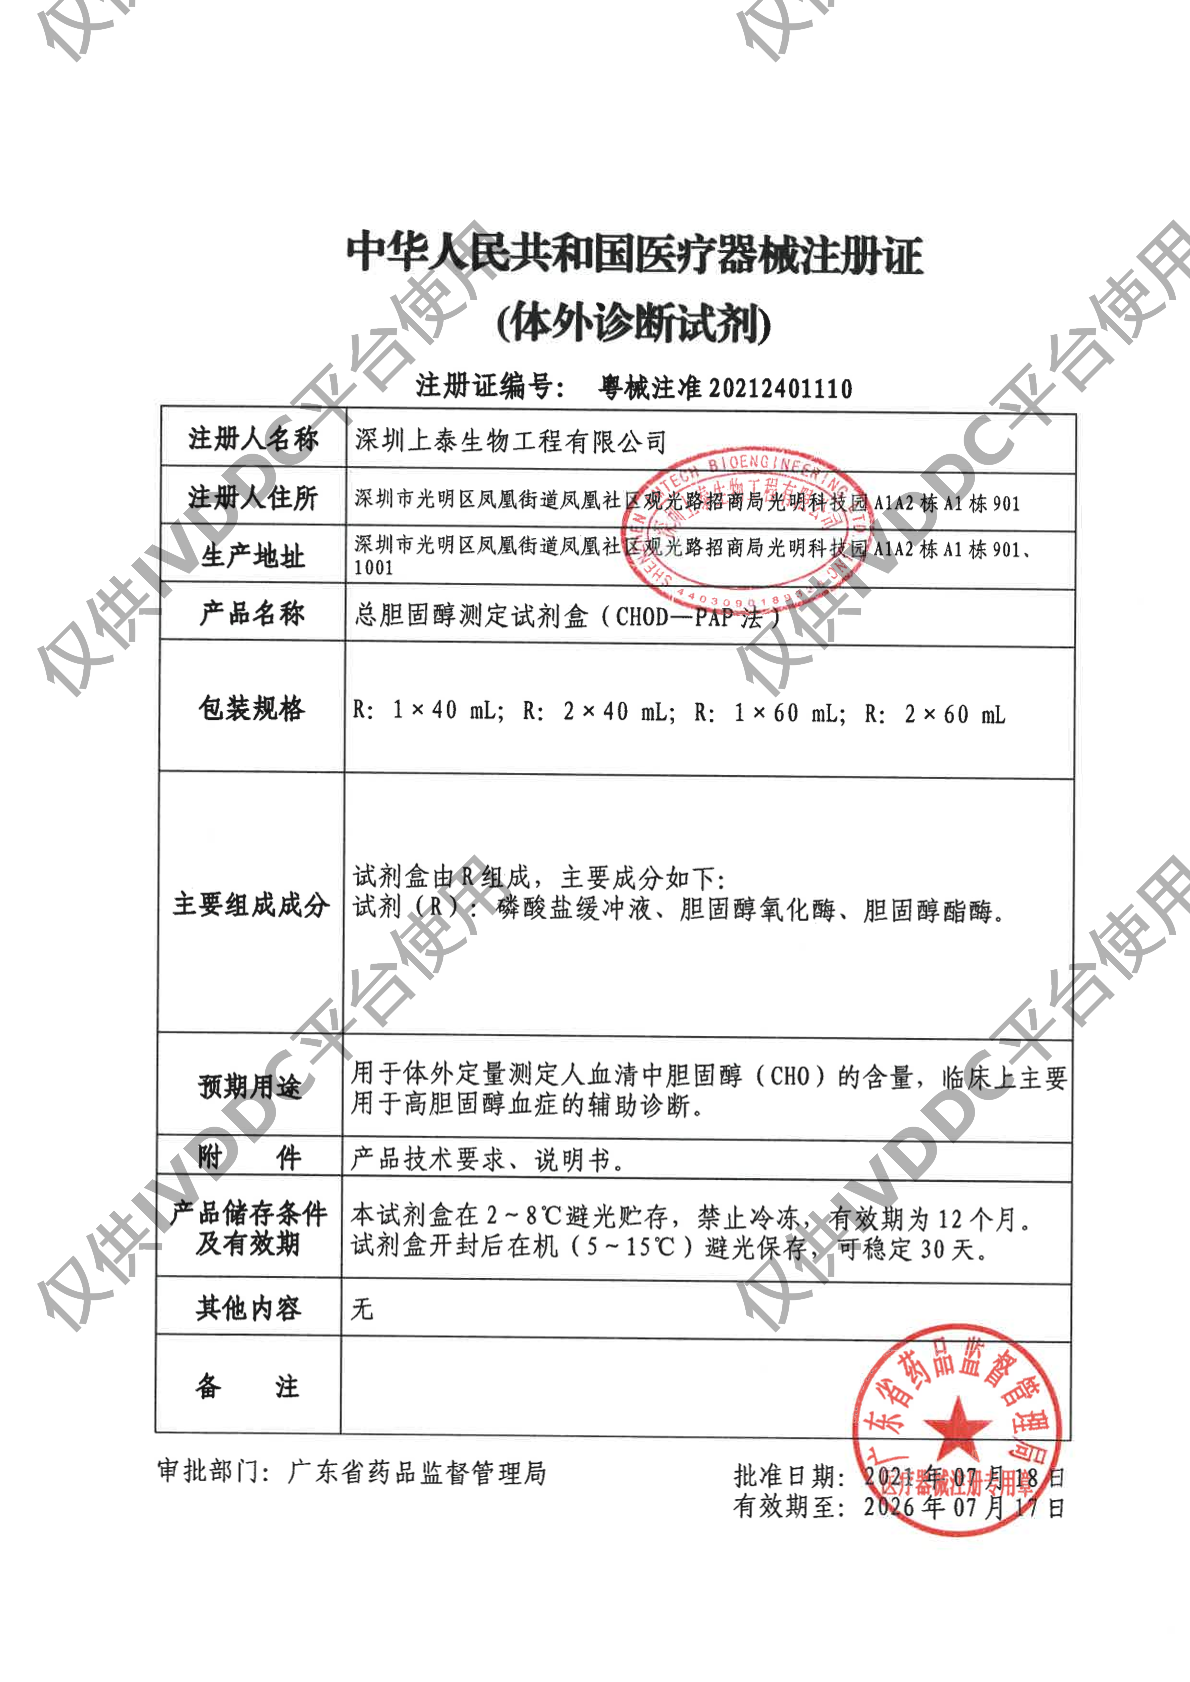 【深圳上泰】总胆固醇测定试剂盒(CHOD-PAP法)注册证